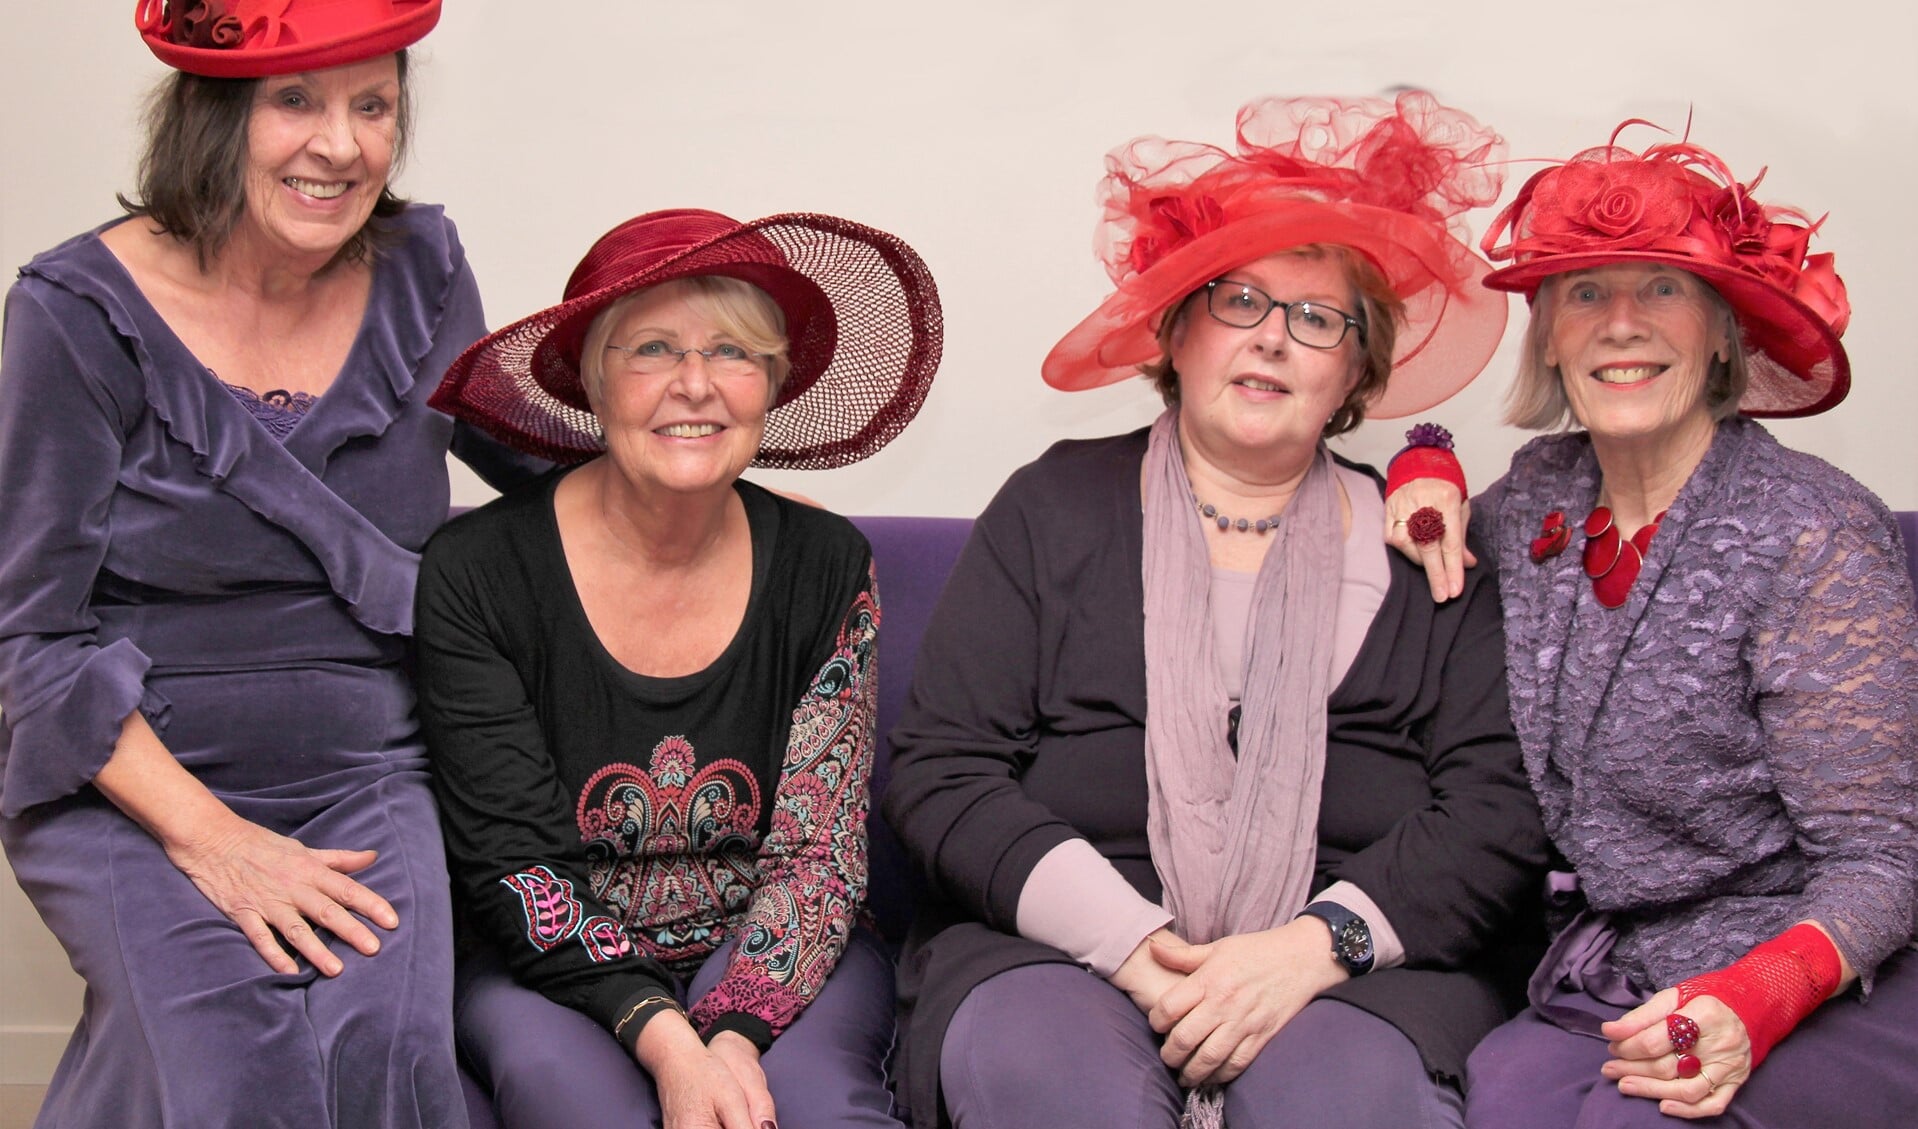 De dames van The Red Hat Society kleden zich altijd in het paars en dragen een rode hoed, een dresscode die verbindt (foto: pr).